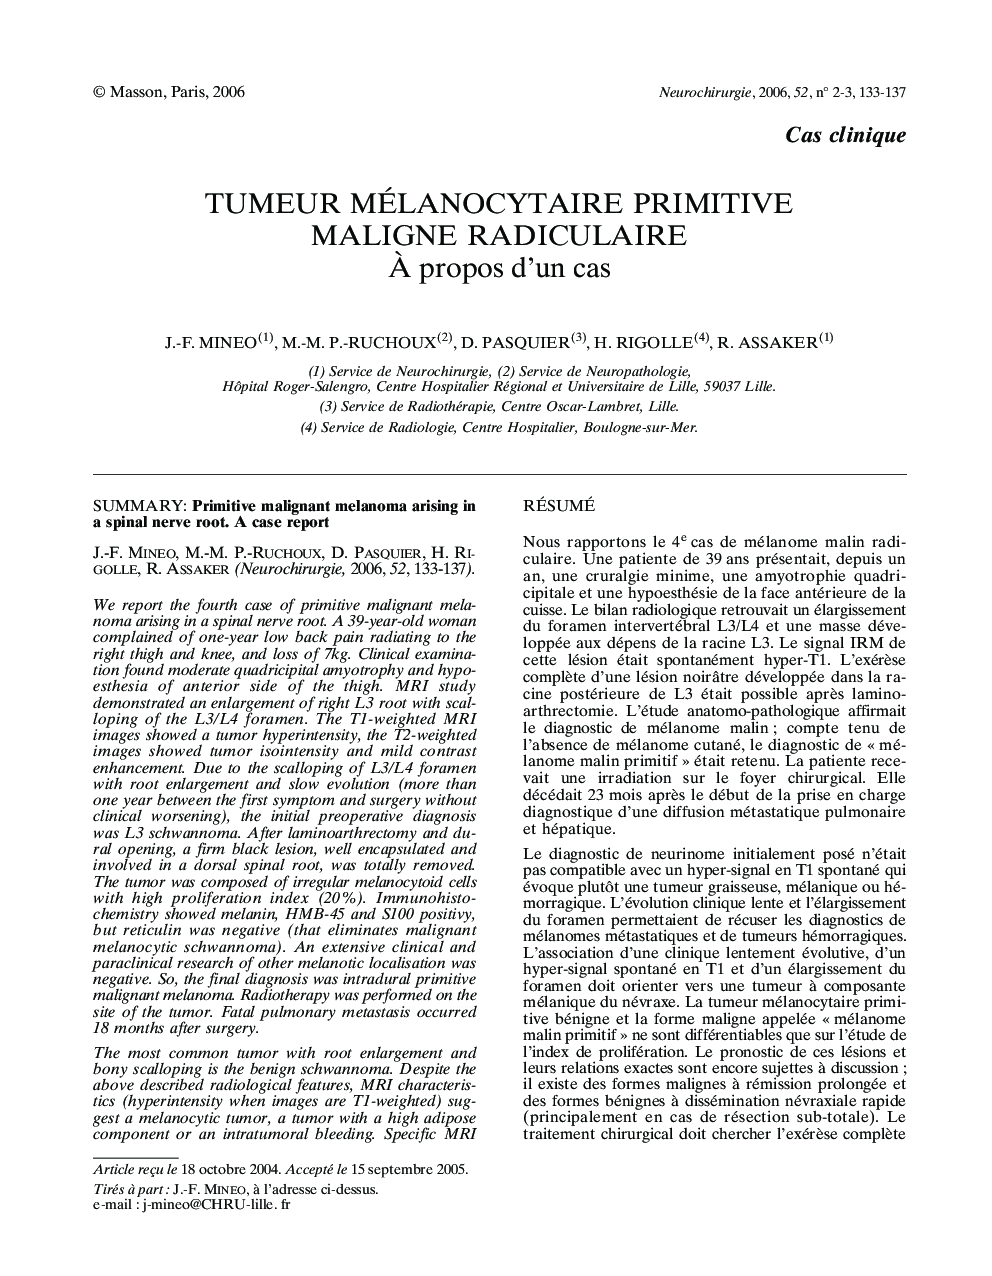 Tumeur mélanocytaire primitive maligne radiculaire